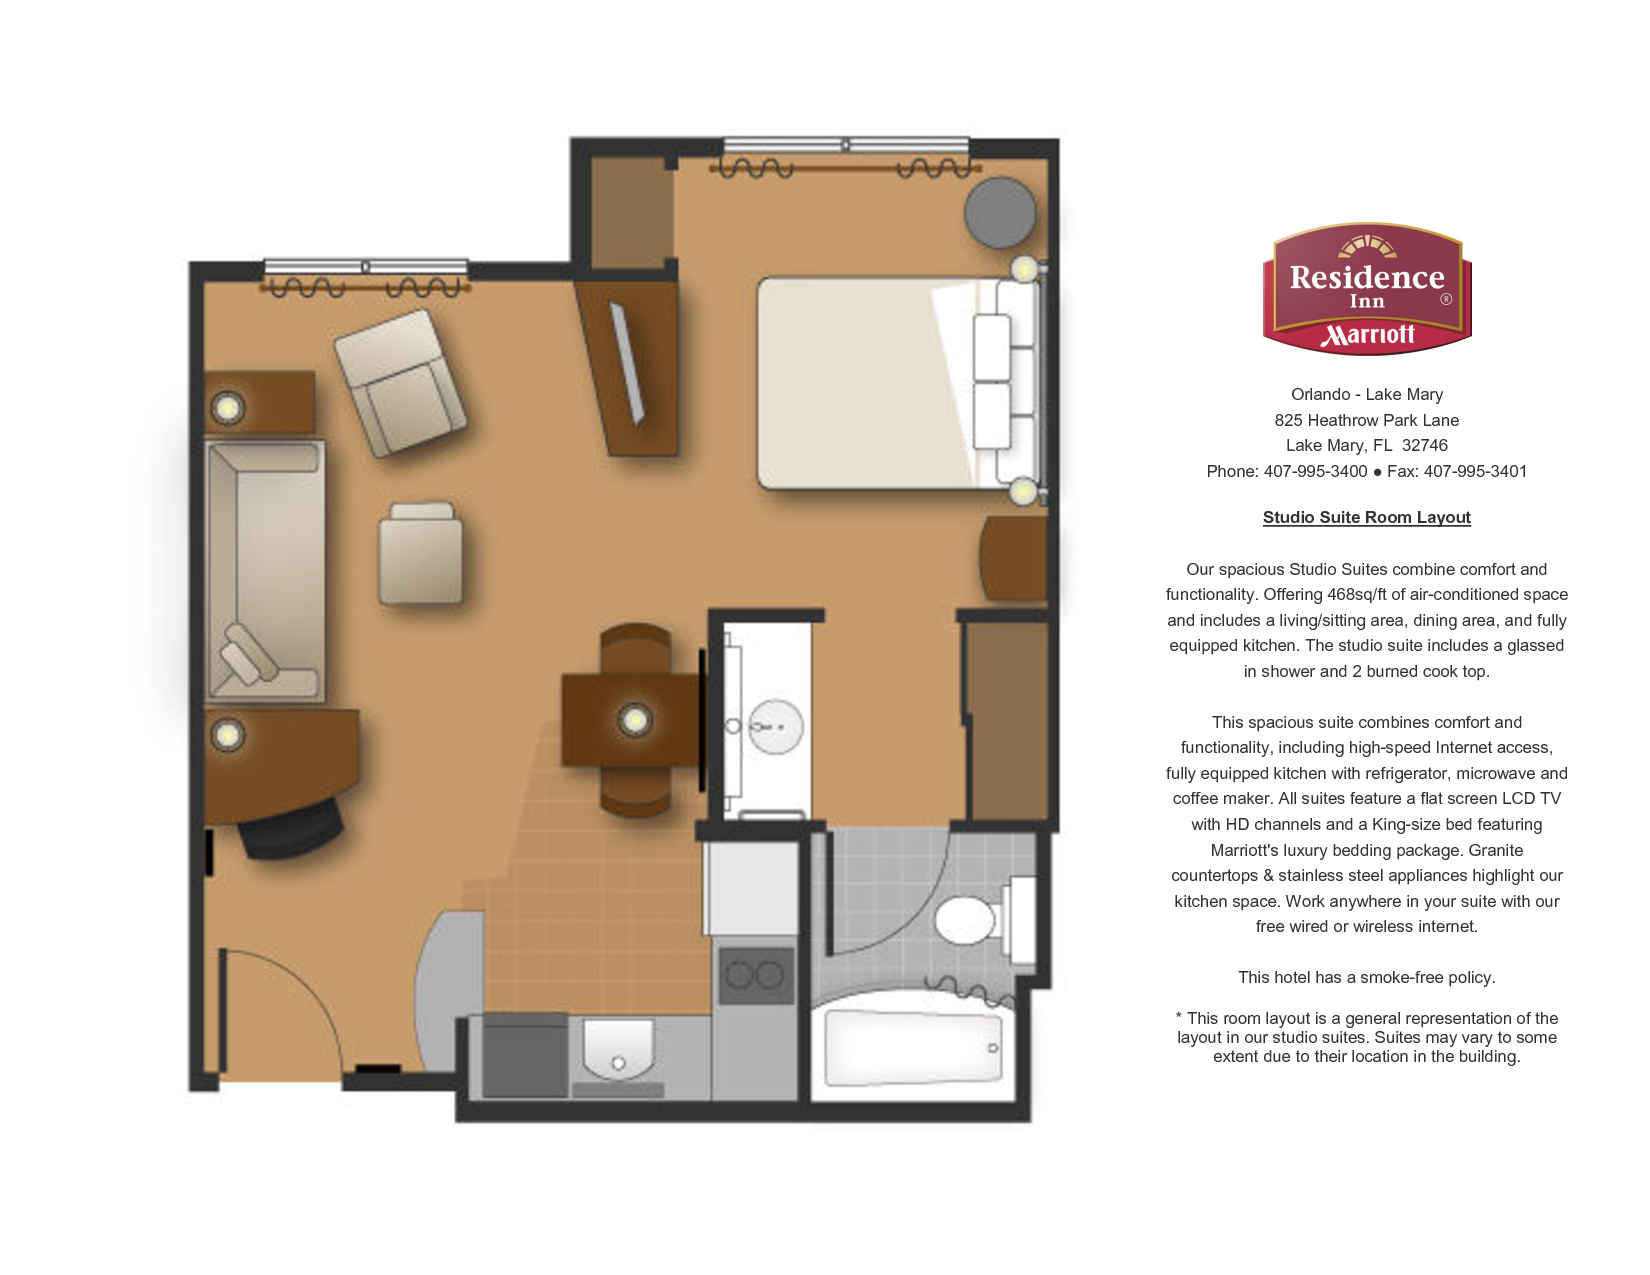 Residence Inn Two Bedroom Suite Floor Plan